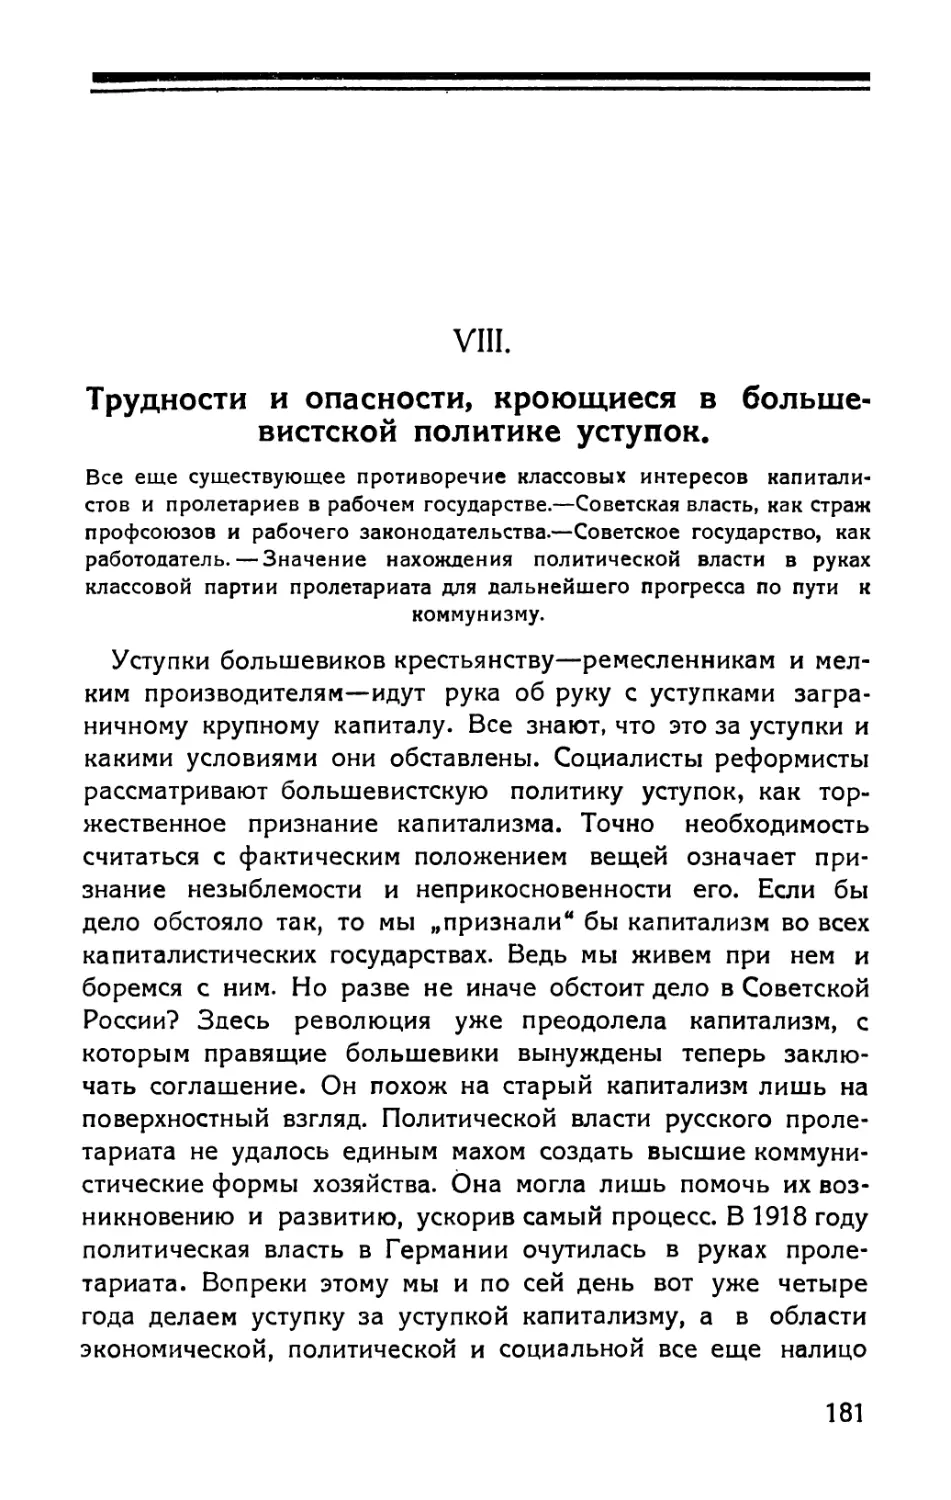 VIII. Трудности и опасности, кроющиеся в большевистской политике уступок